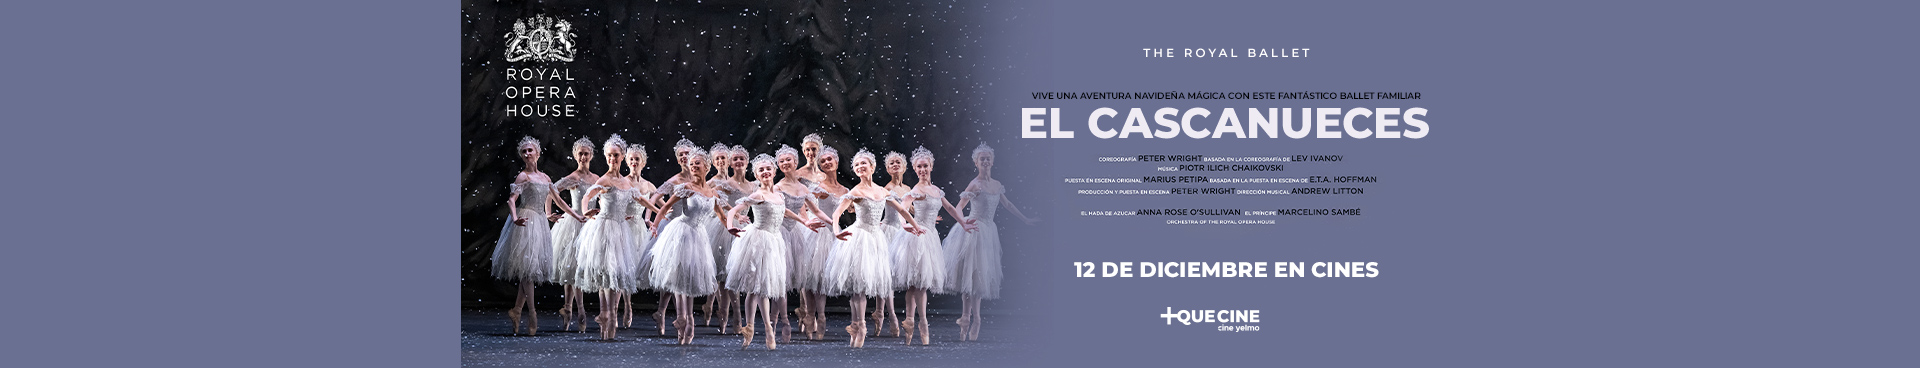  EL CASCANUECES - BALLET LIVE ROH 23-24